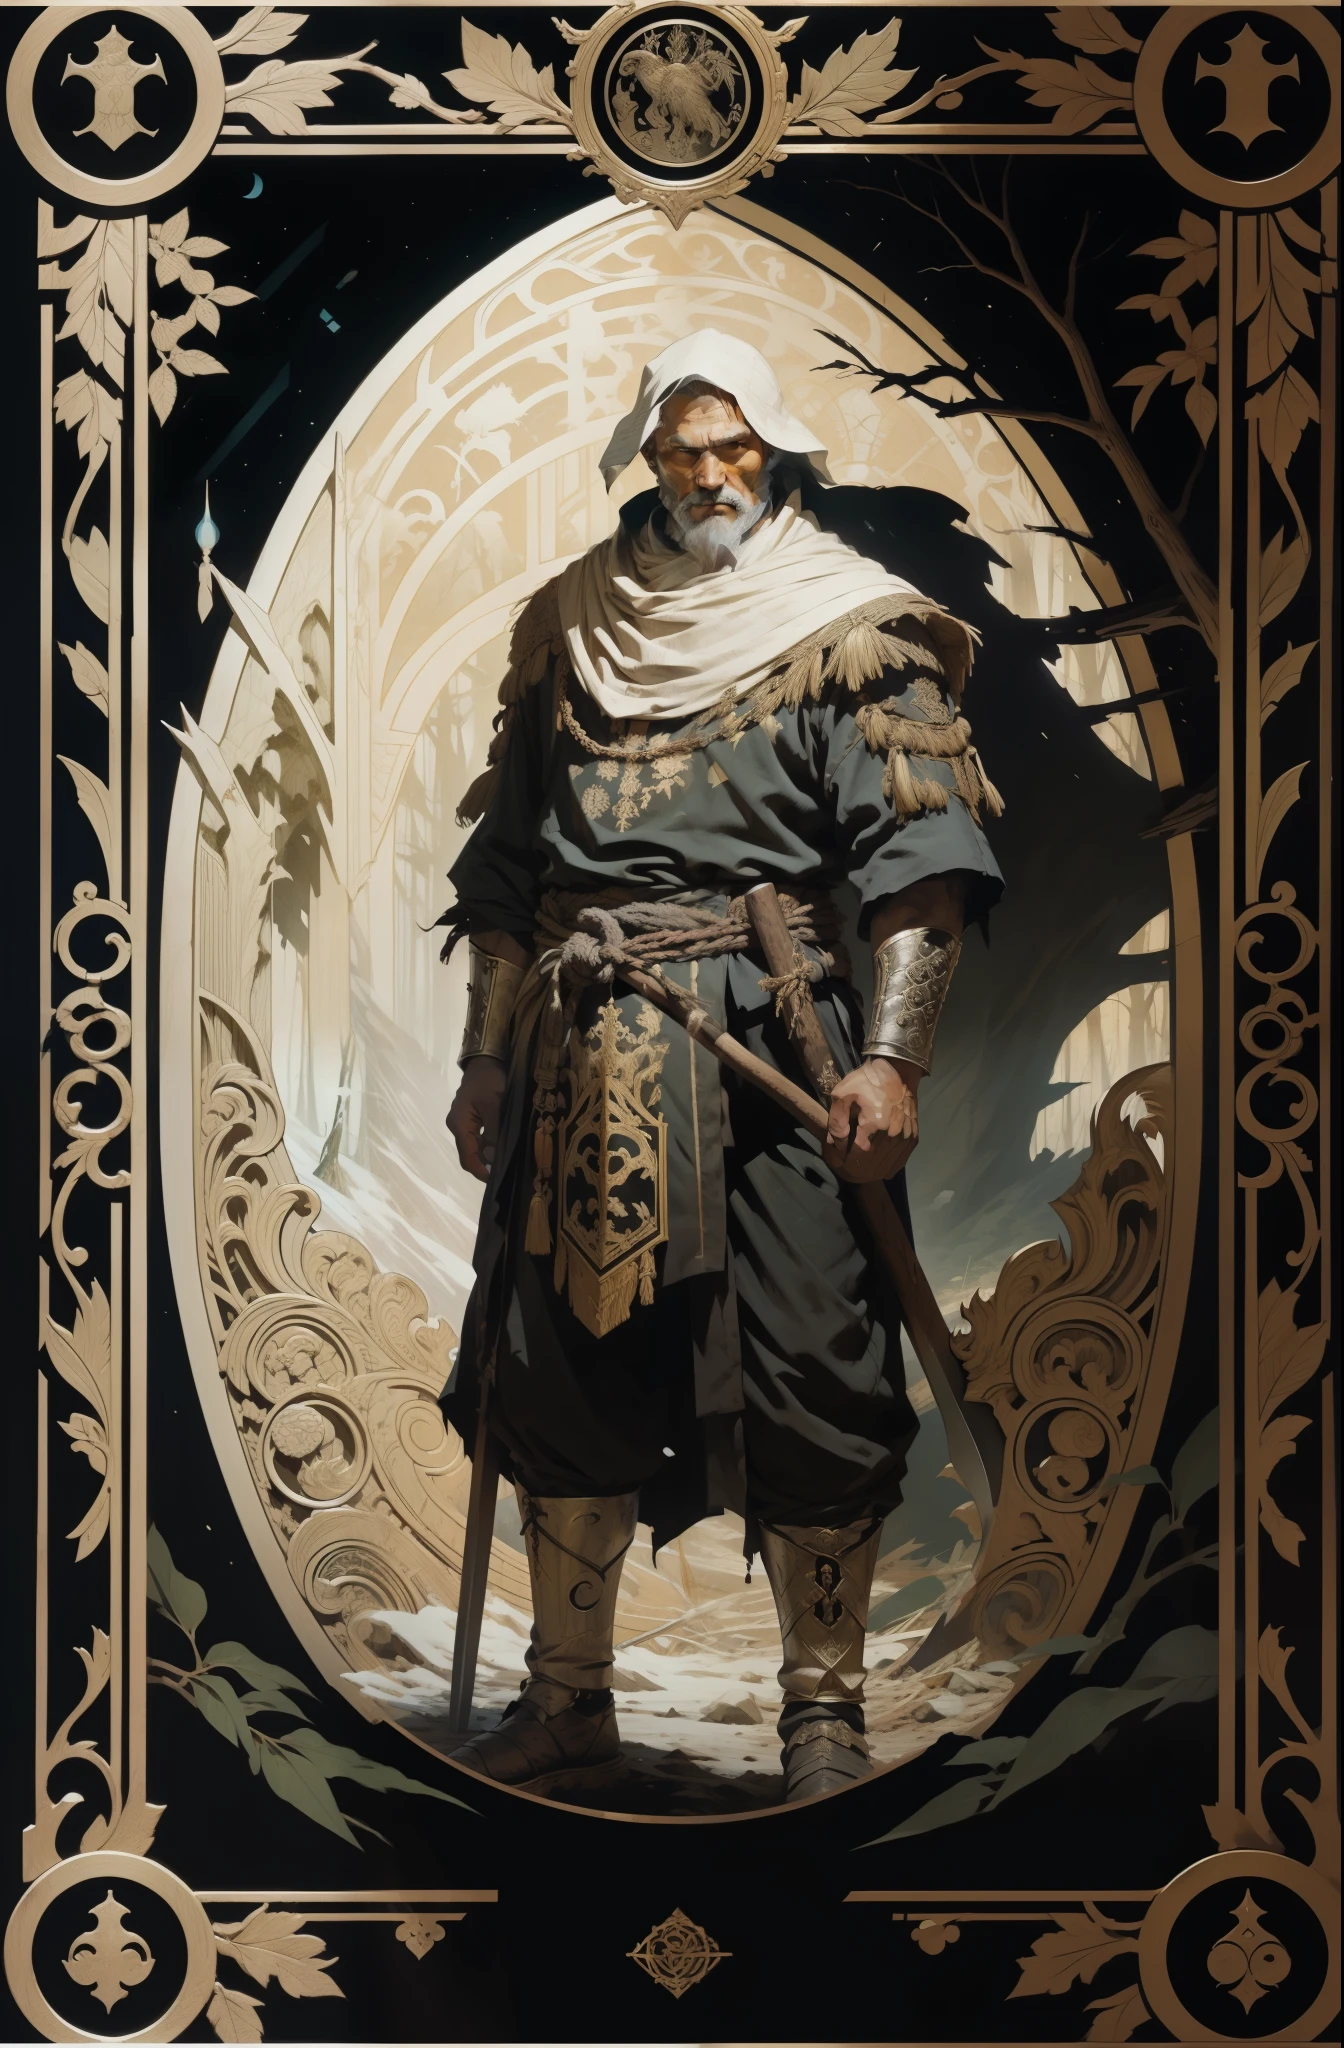 رجل, بالملابس التقليدية لشعوب الشمال, بفأس في يديه, خلفية الغابة المظلمة, نمط التارو, إطار منقوش في العصور الوسطى